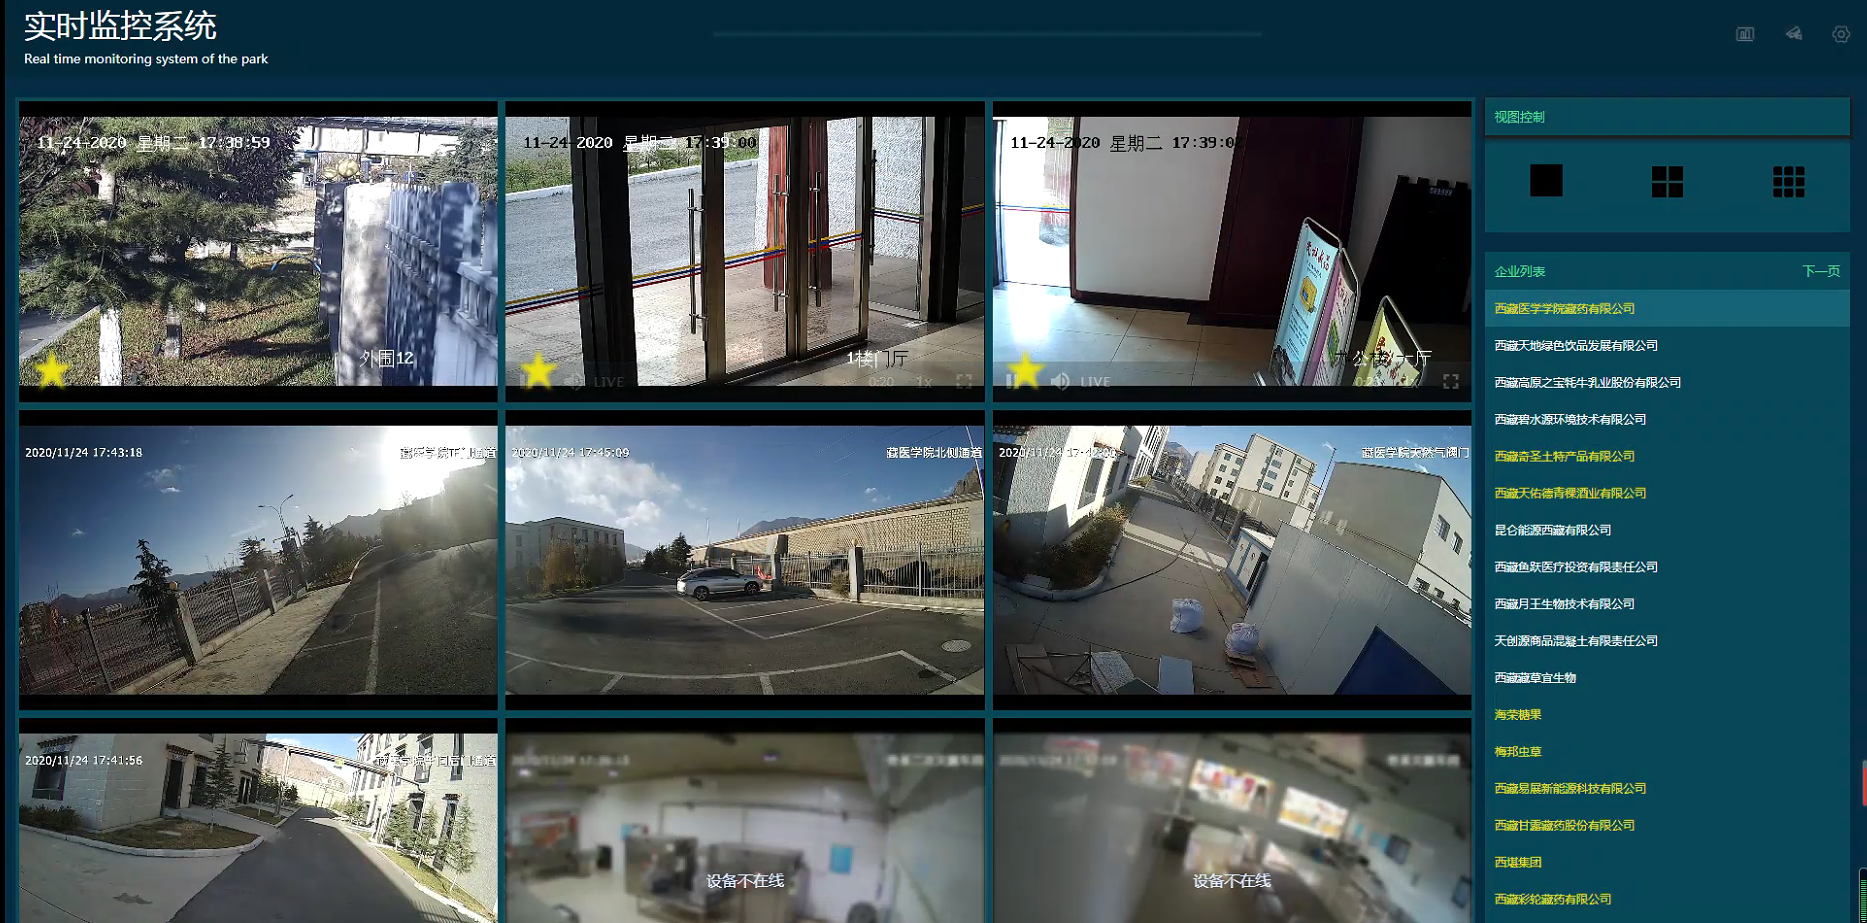 如何利用4g单兵设备配合国标视频监控平台搭建保安全巡视系统